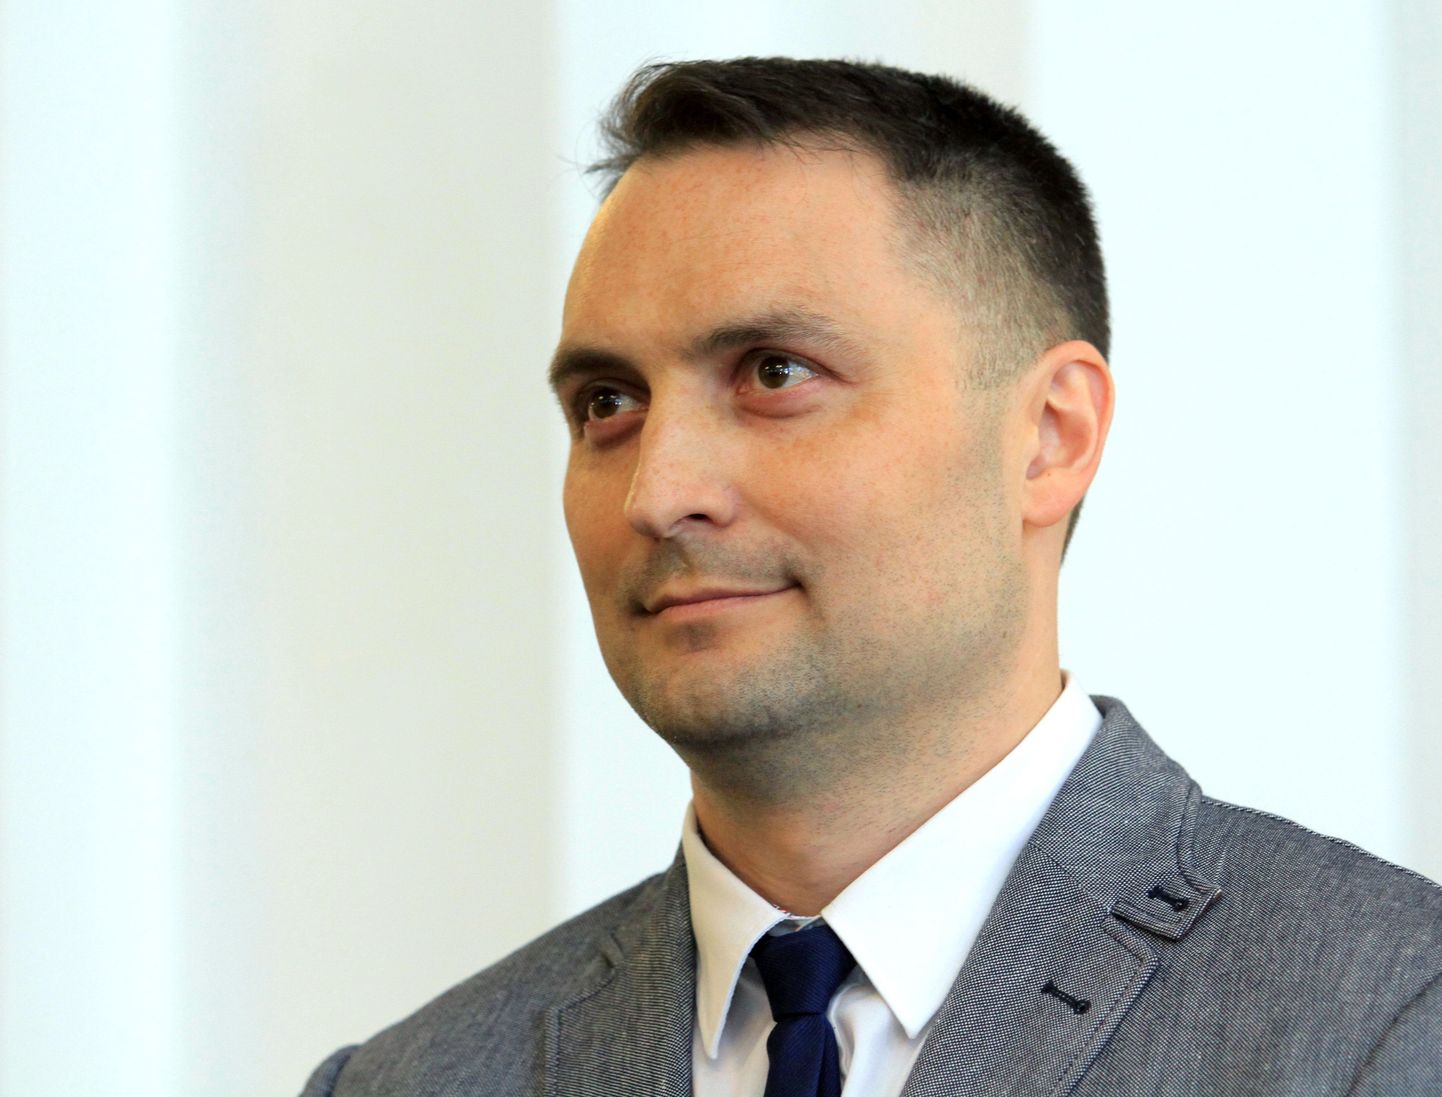 Vene julgeolekuteenistuse töötaja Nikolai Filiptšenko Vilniuse kohtus.